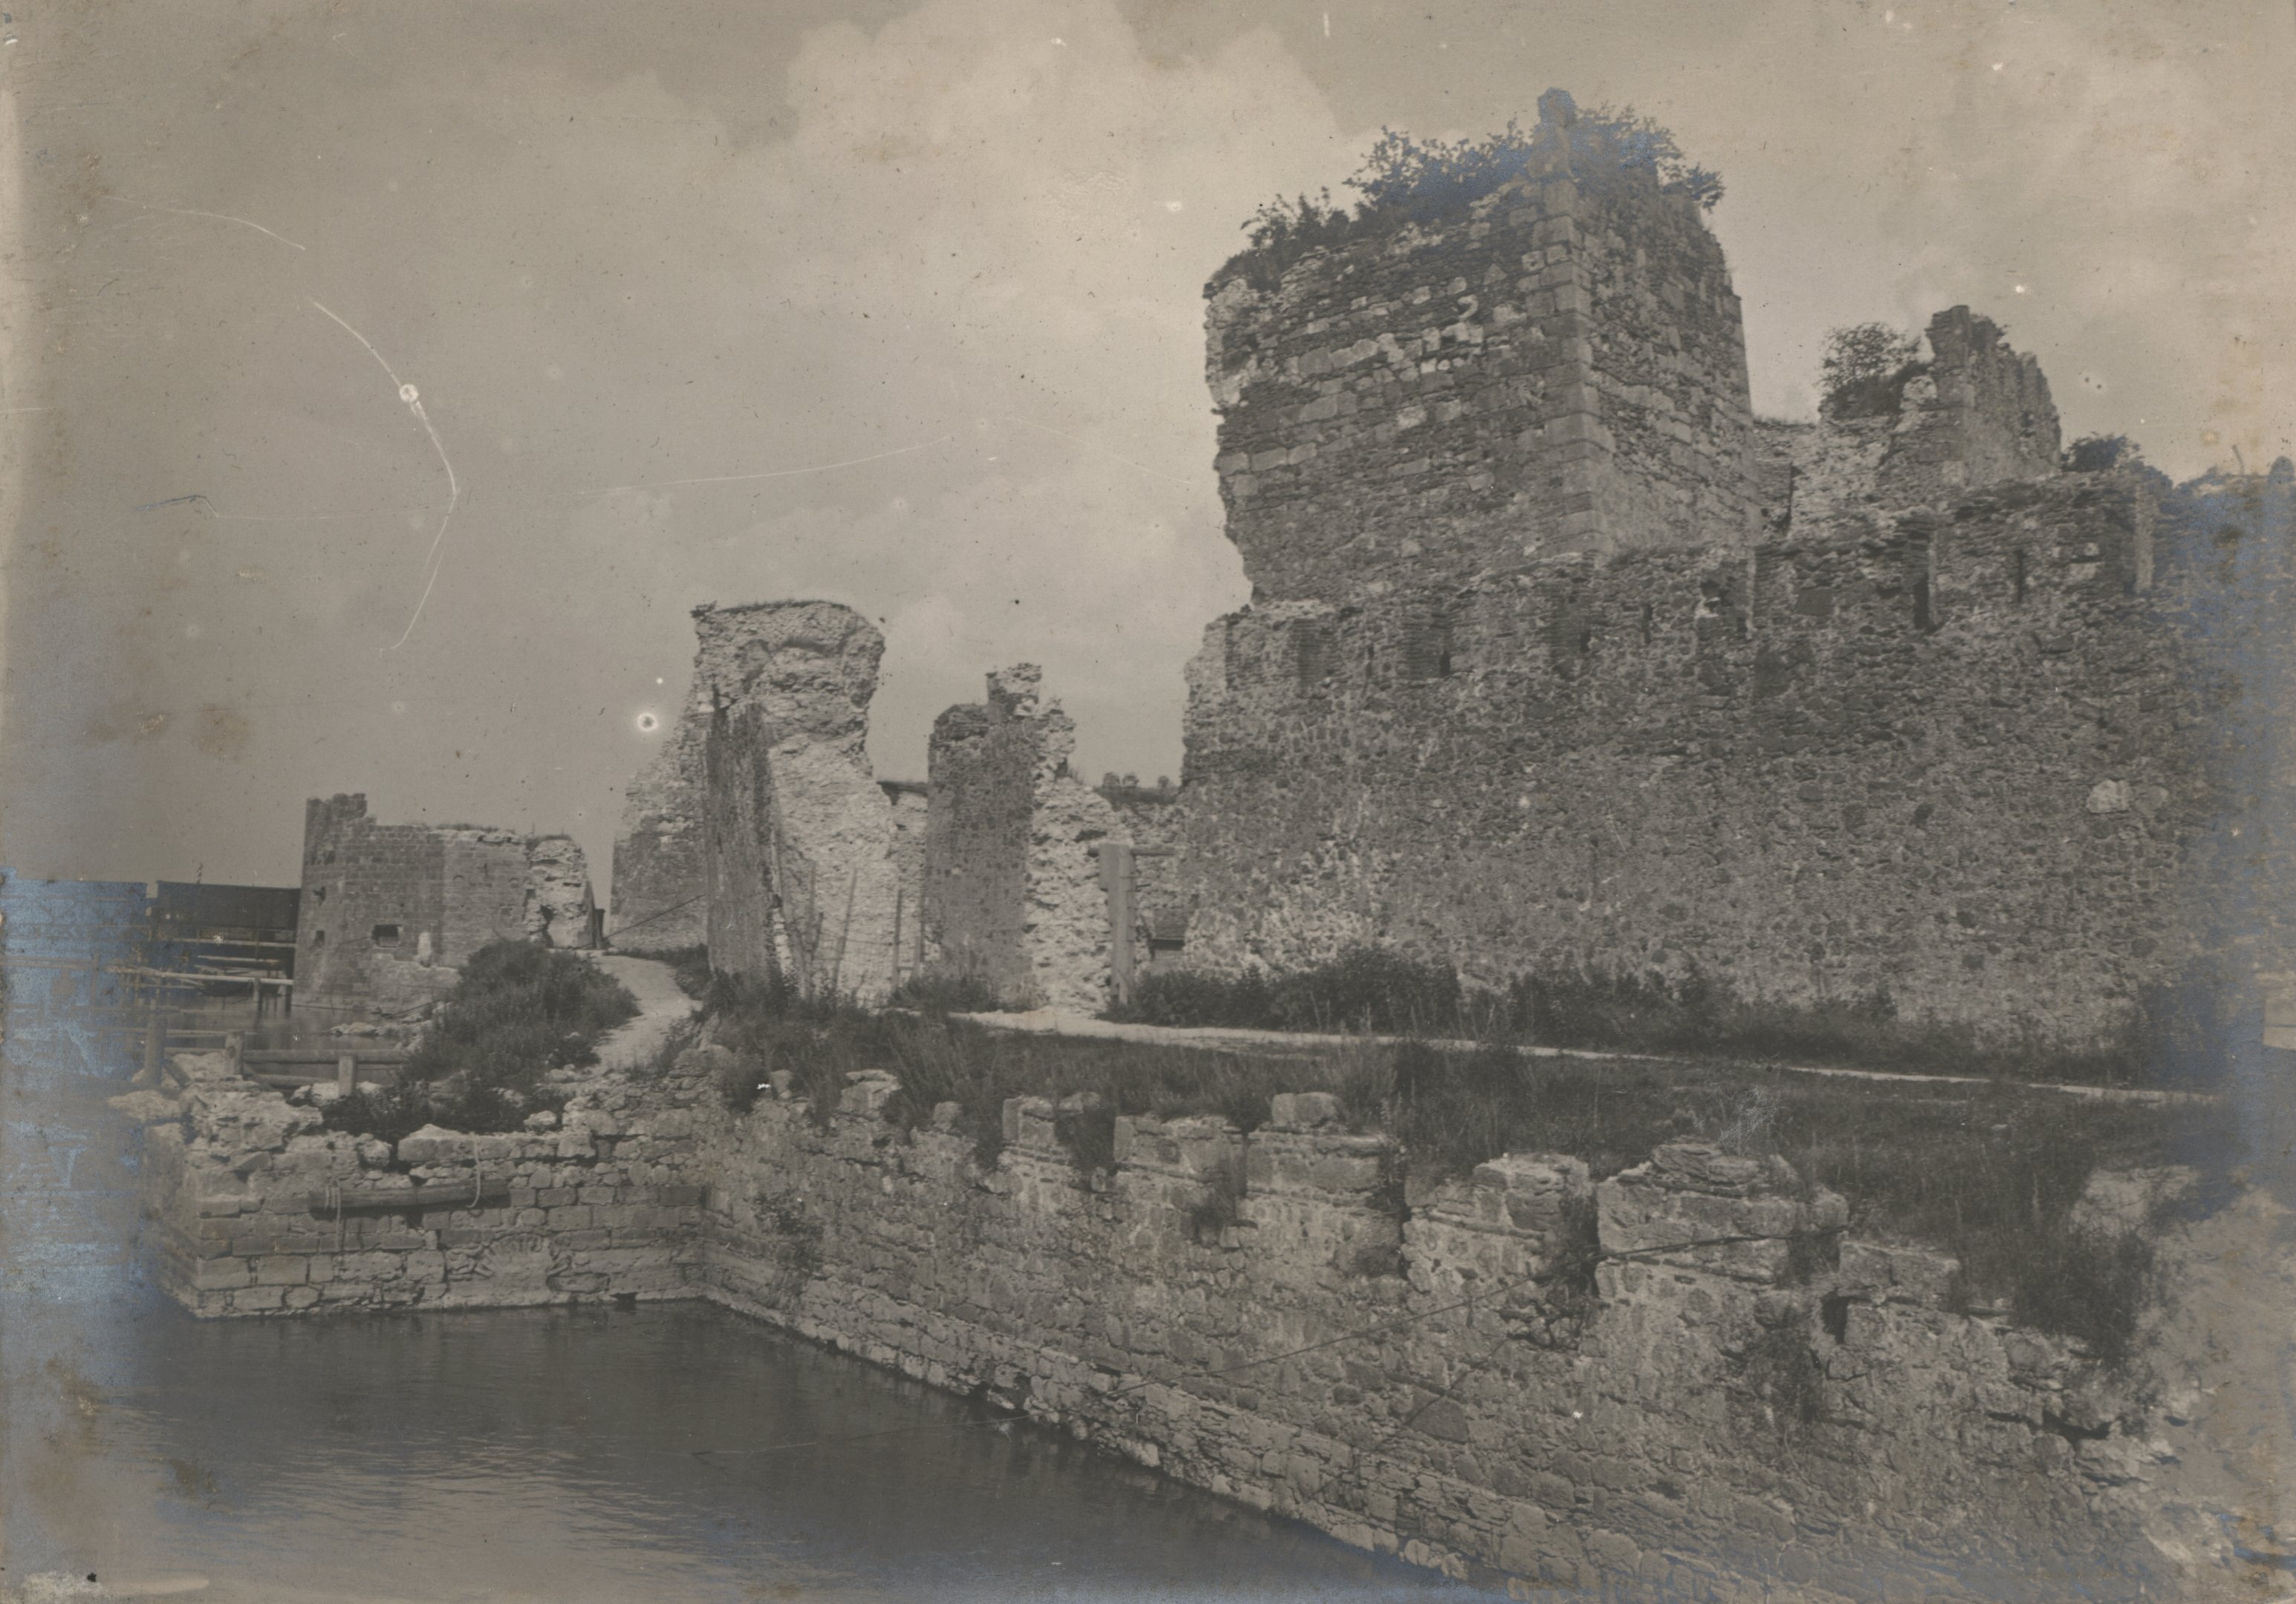 Ágyúval megsemmisített erőd fala Szendrőn, 1915. október 9. (Magyar Környezetvédelmi és Vízügyi Múzeum - Duna Múzeum CC BY-NC-SA)